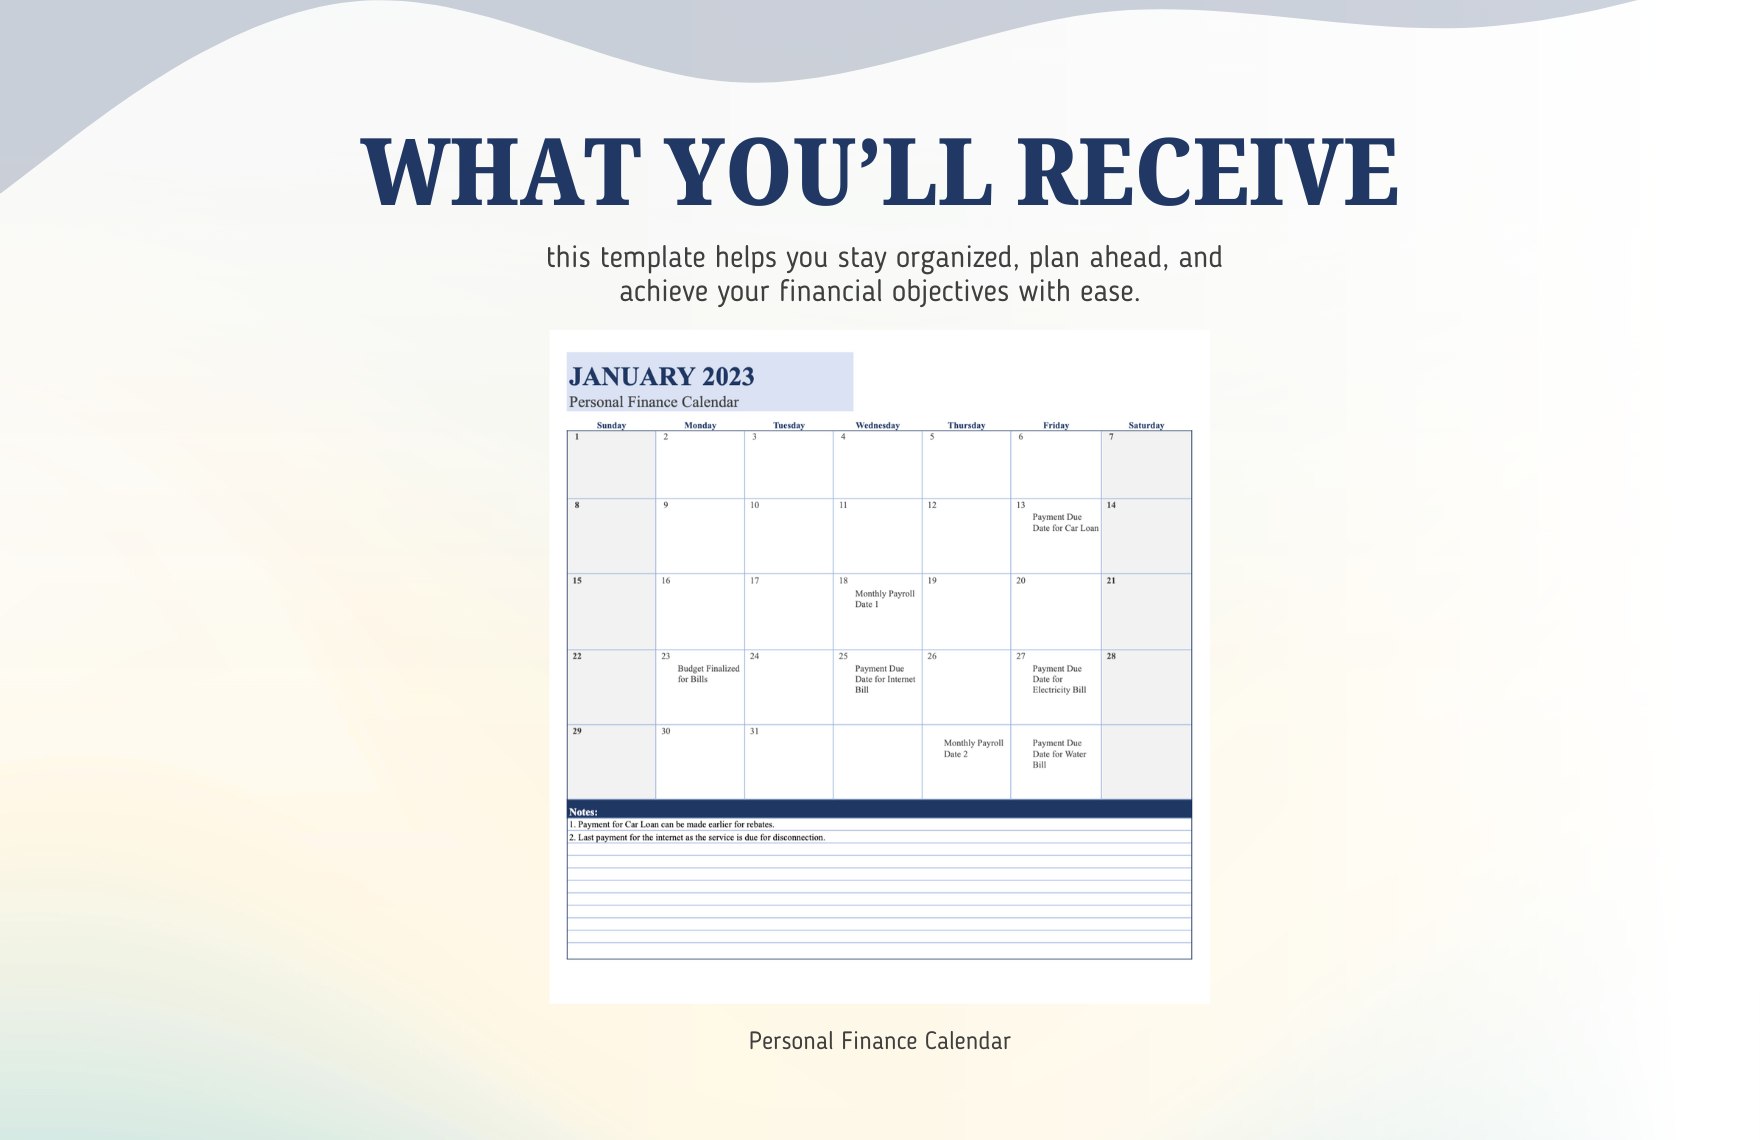 Personal Finance Calendar Template